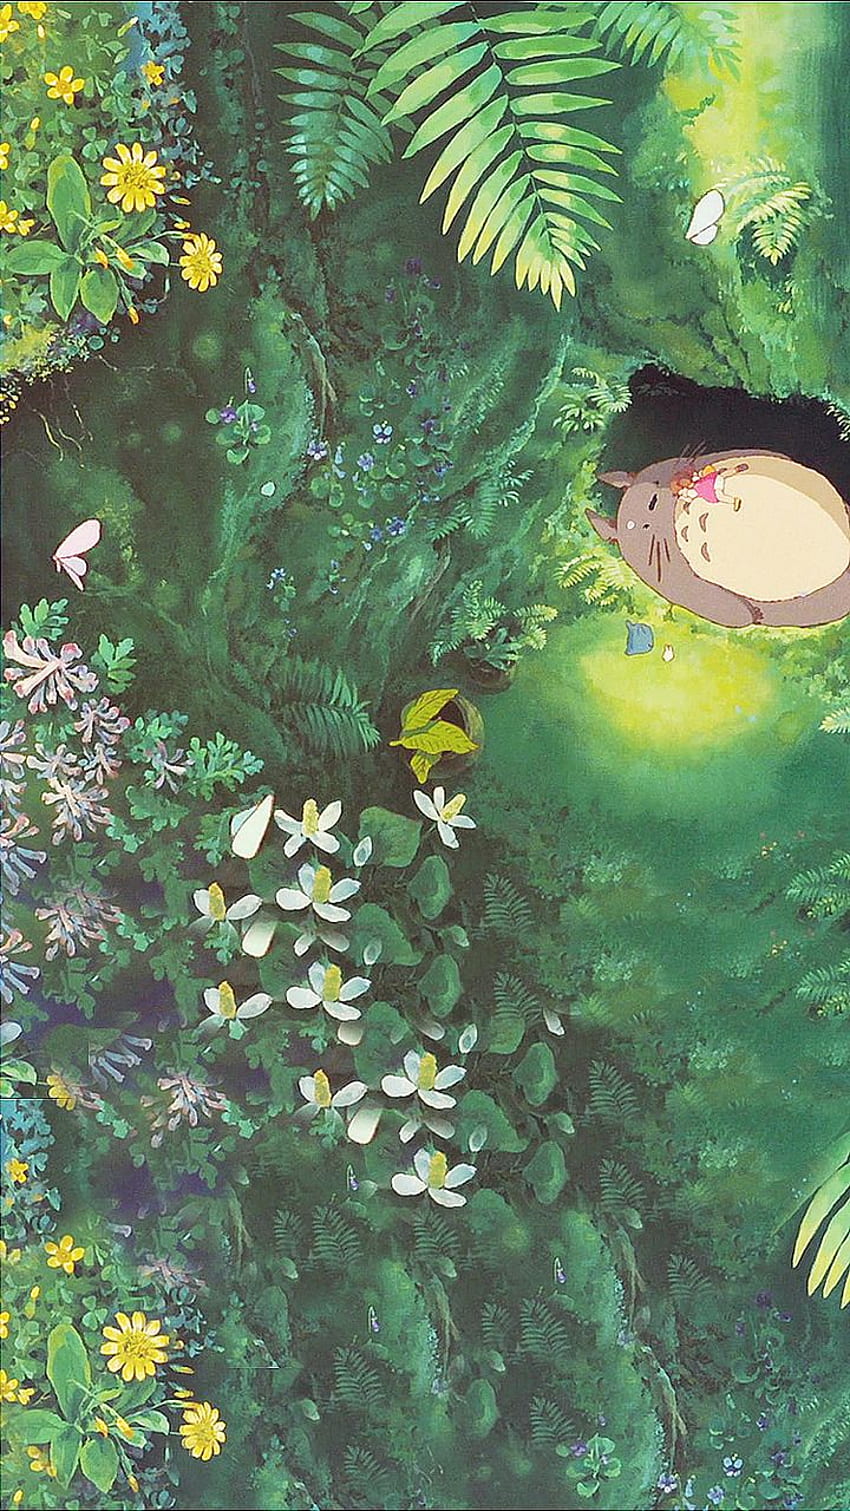 Hãy đắm chìm trong thế giới hoa đầy màu sắc của Ghibli! Thưởng thức Studio Ghibli Flowers để trải nghiệm những bông hoa tuyệt đẹp và cảm nhận được sự tinh tế của họa sĩ khi đem lại một không gian cổ tích trong những tác phẩm phim hoạt hình đình đám của nhà sản xuất Ghibli.